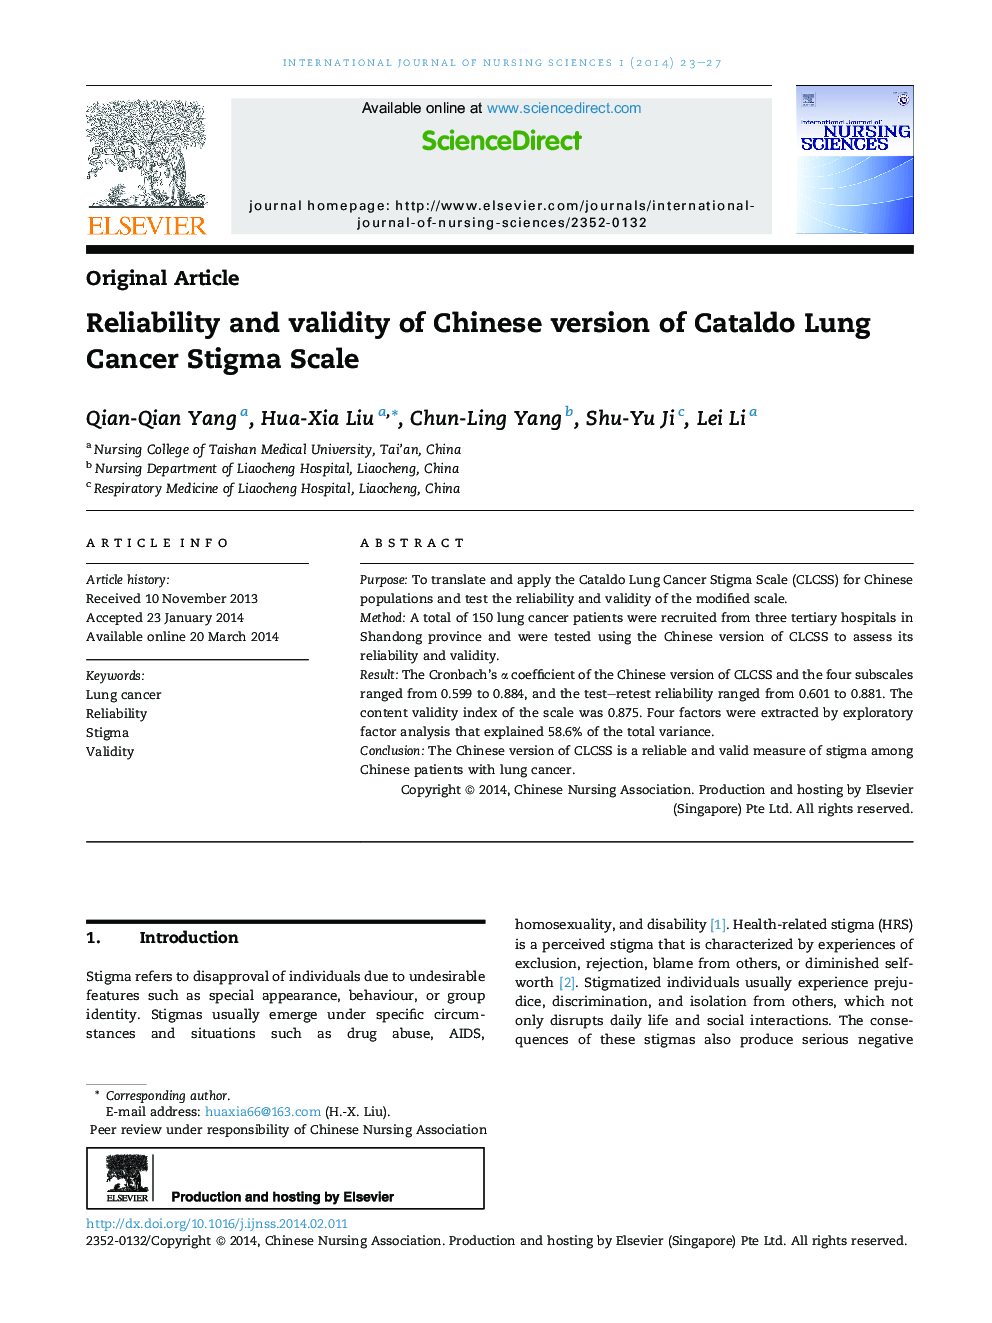 قابلیت اطمینان و اعتبار نسخه چینی مقیاس Cataldo ننگ سرطان ریه 